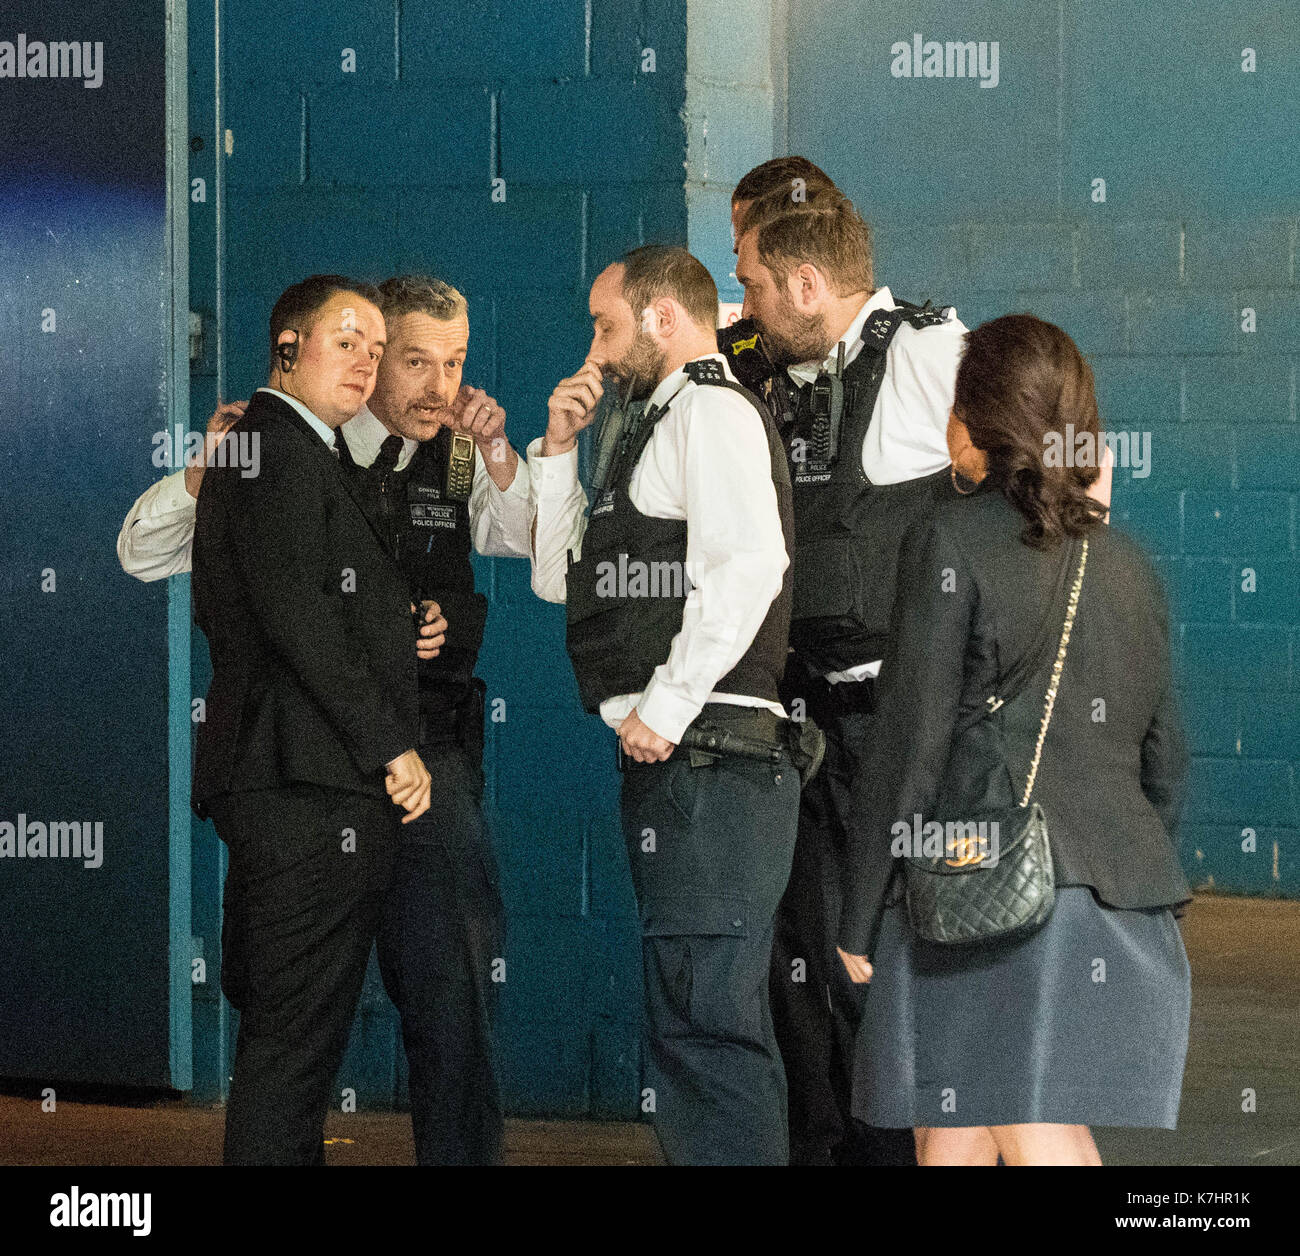 Londres, 16 de septiembre de 2017, manifestantes anti pieles el piquete de Gareth Pugh lfw17 presentación en el BFI IMAX un pequeño grupo de oficiales de la policía llegó y consultado con personal de seguridad crédito: Ian Davidson/alamy live news Foto de stock